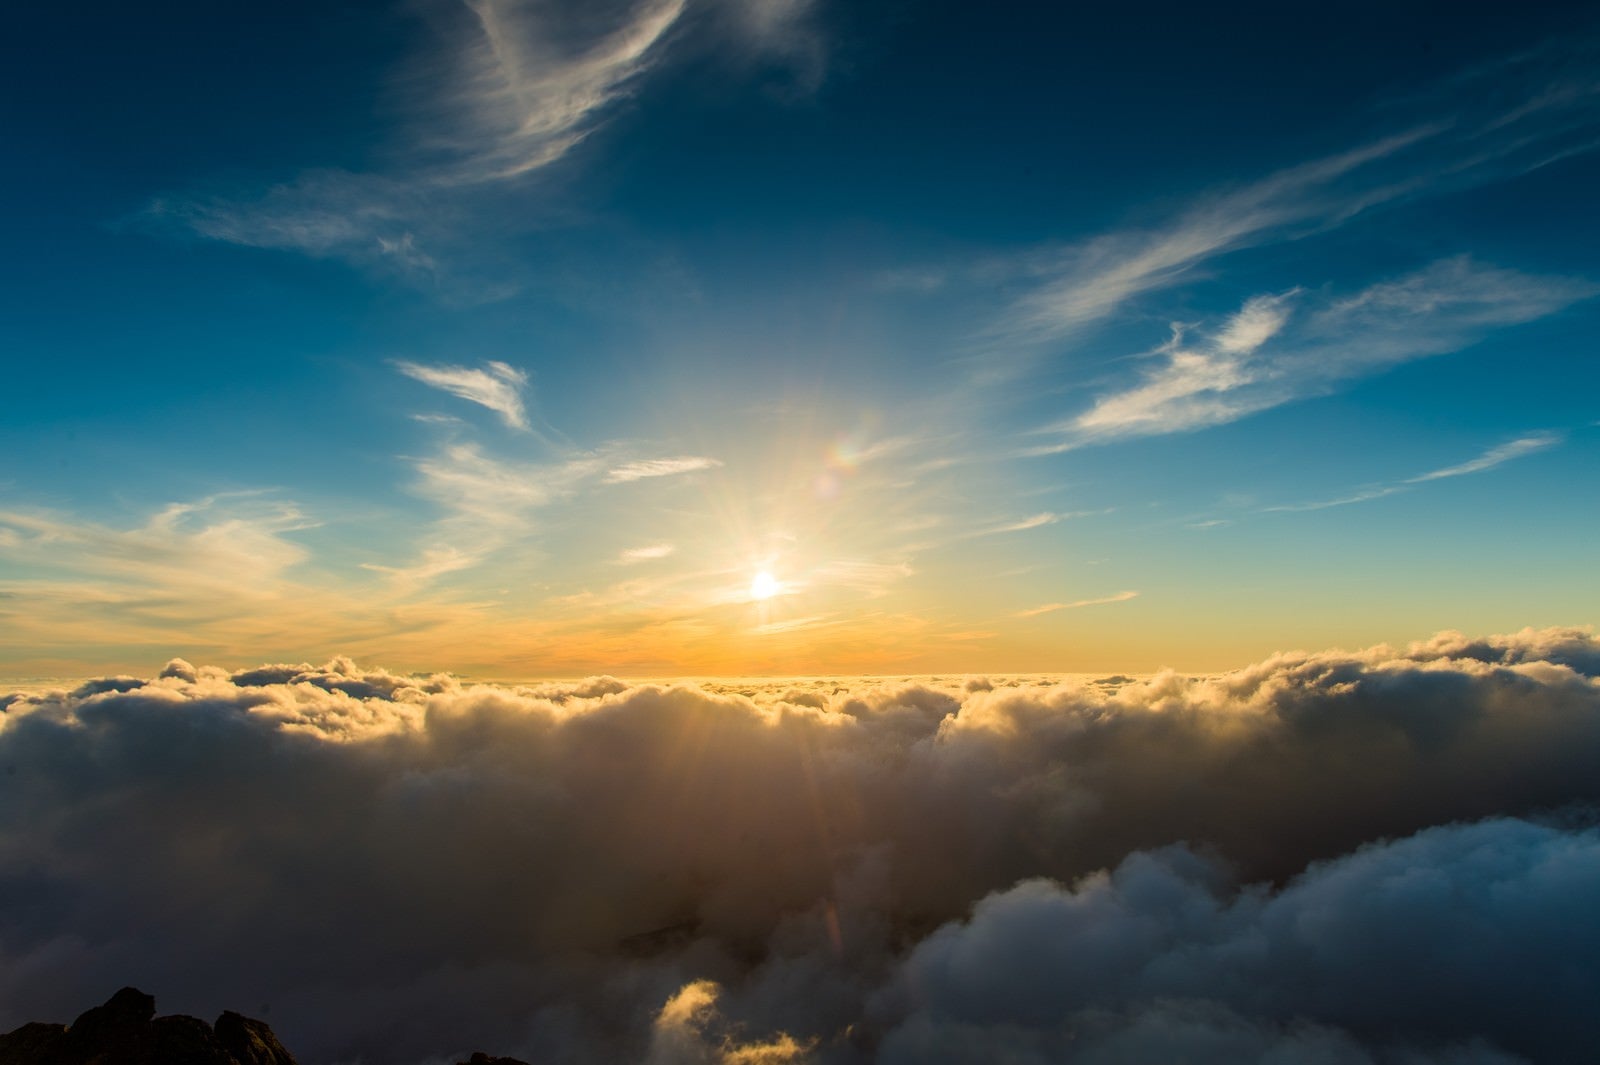 「槍ヶ岳頂上から見渡す限りの雲海と深い青空」の写真